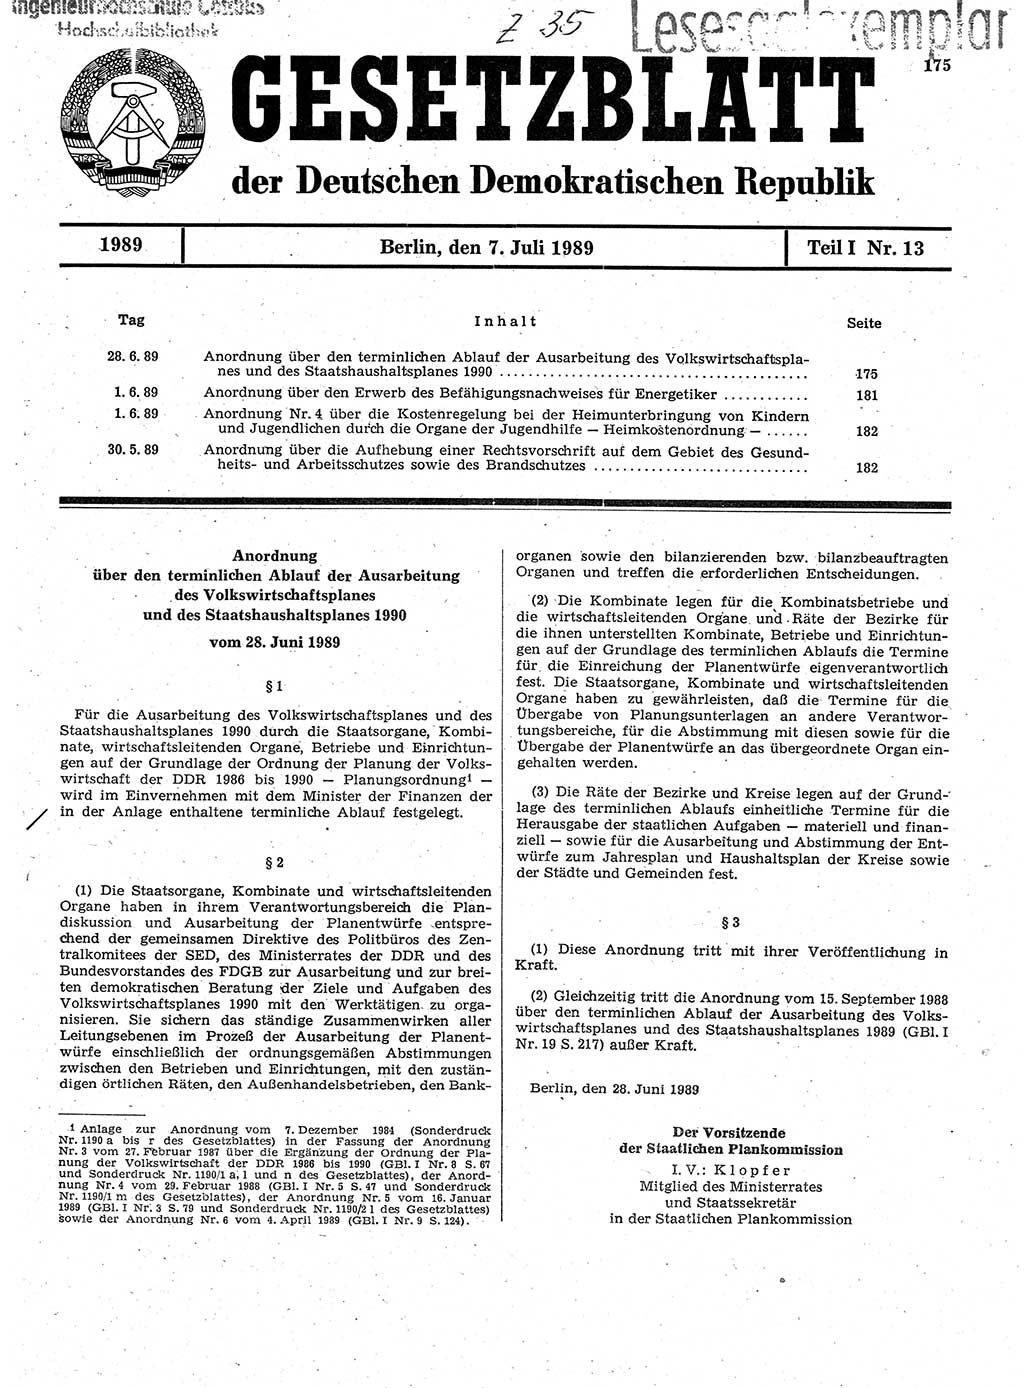 Gesetzblatt (GBl.) der Deutschen Demokratischen Republik (DDR) Teil Ⅰ 1989, Seite 175 (GBl. DDR Ⅰ 1989, S. 175)